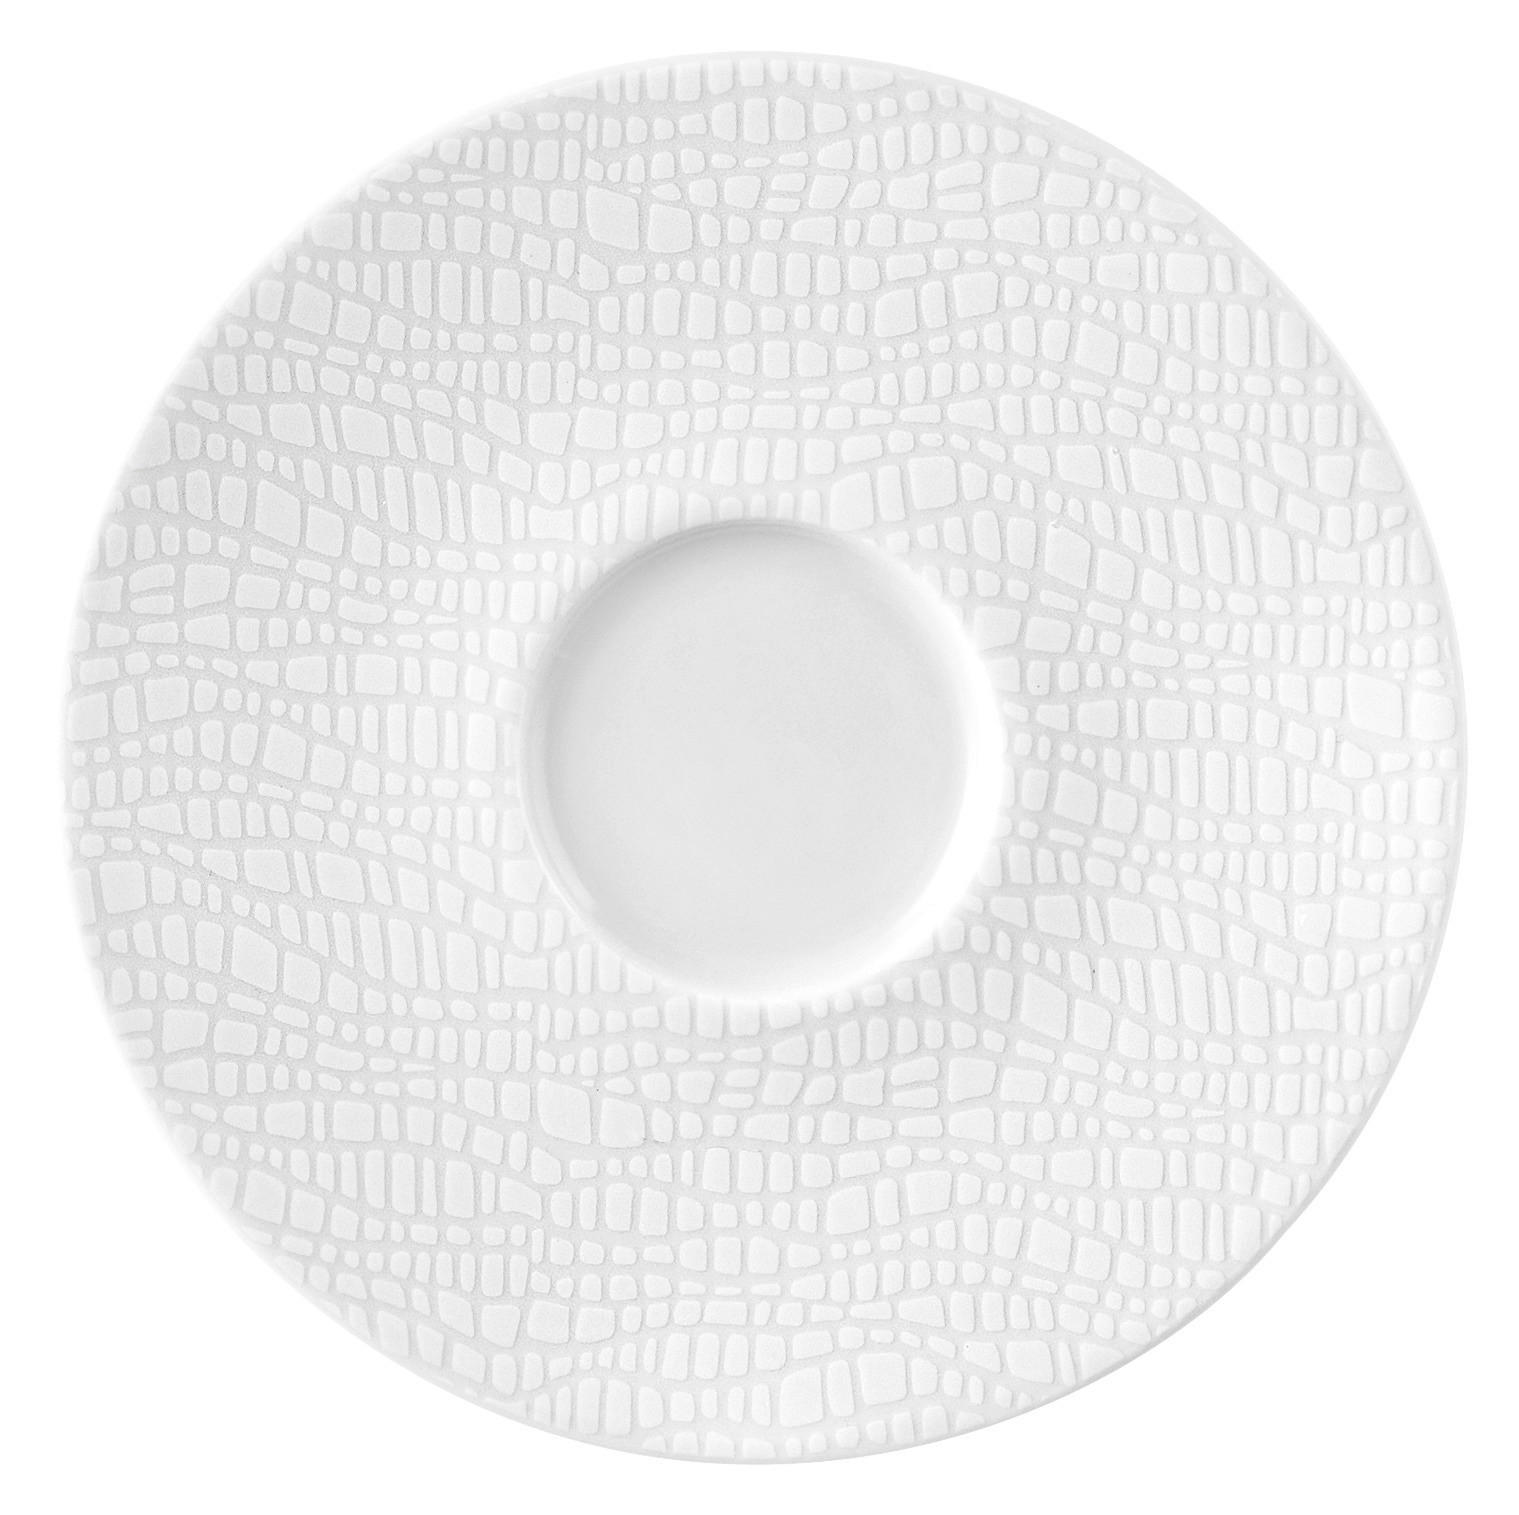 ESPRESSO-UNTERTASSE Life Fashion Luxury White 13,5 cm  - Weiß, Design, Keramik (13,5cm) - Seltmann Weiden